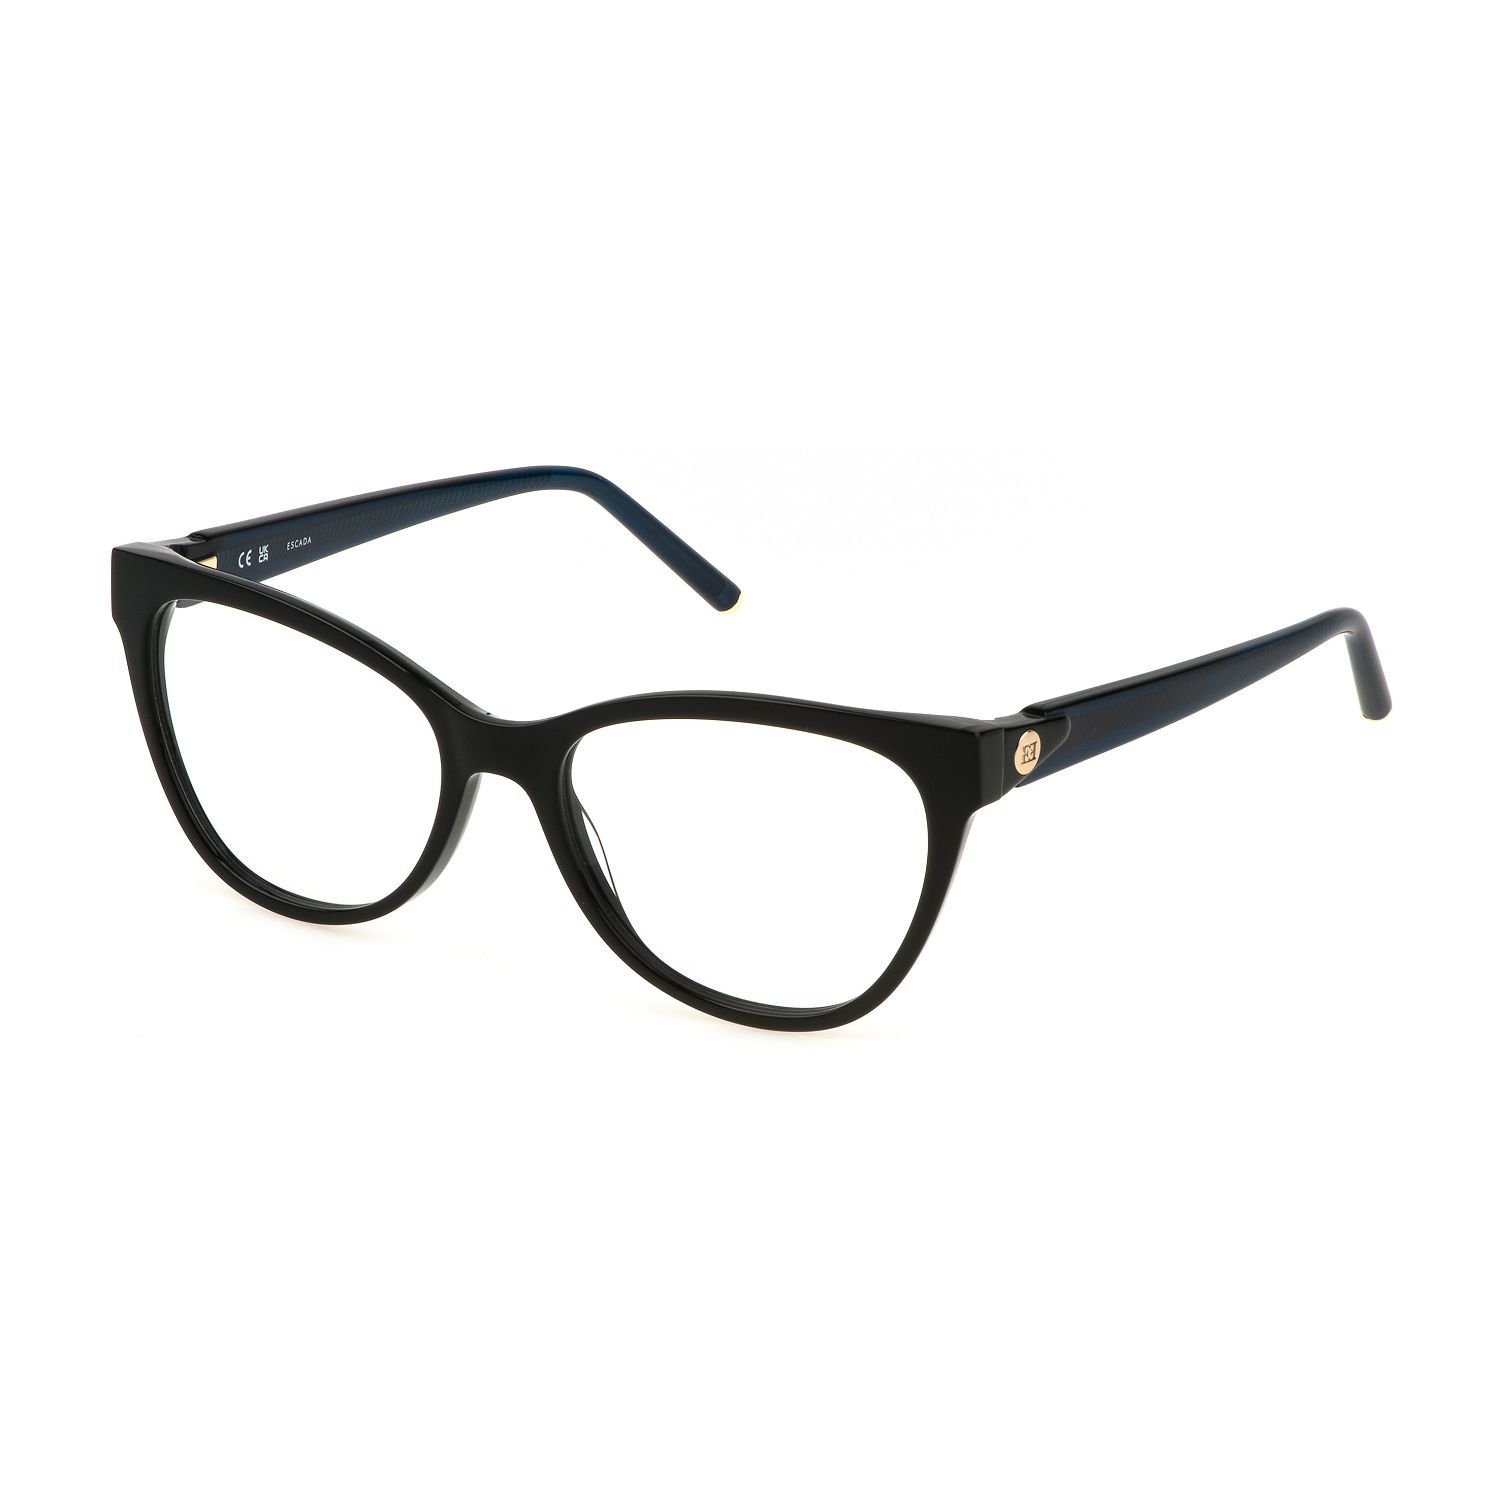 VESE03 Butterfly Eyeglasses 0700 - size 54